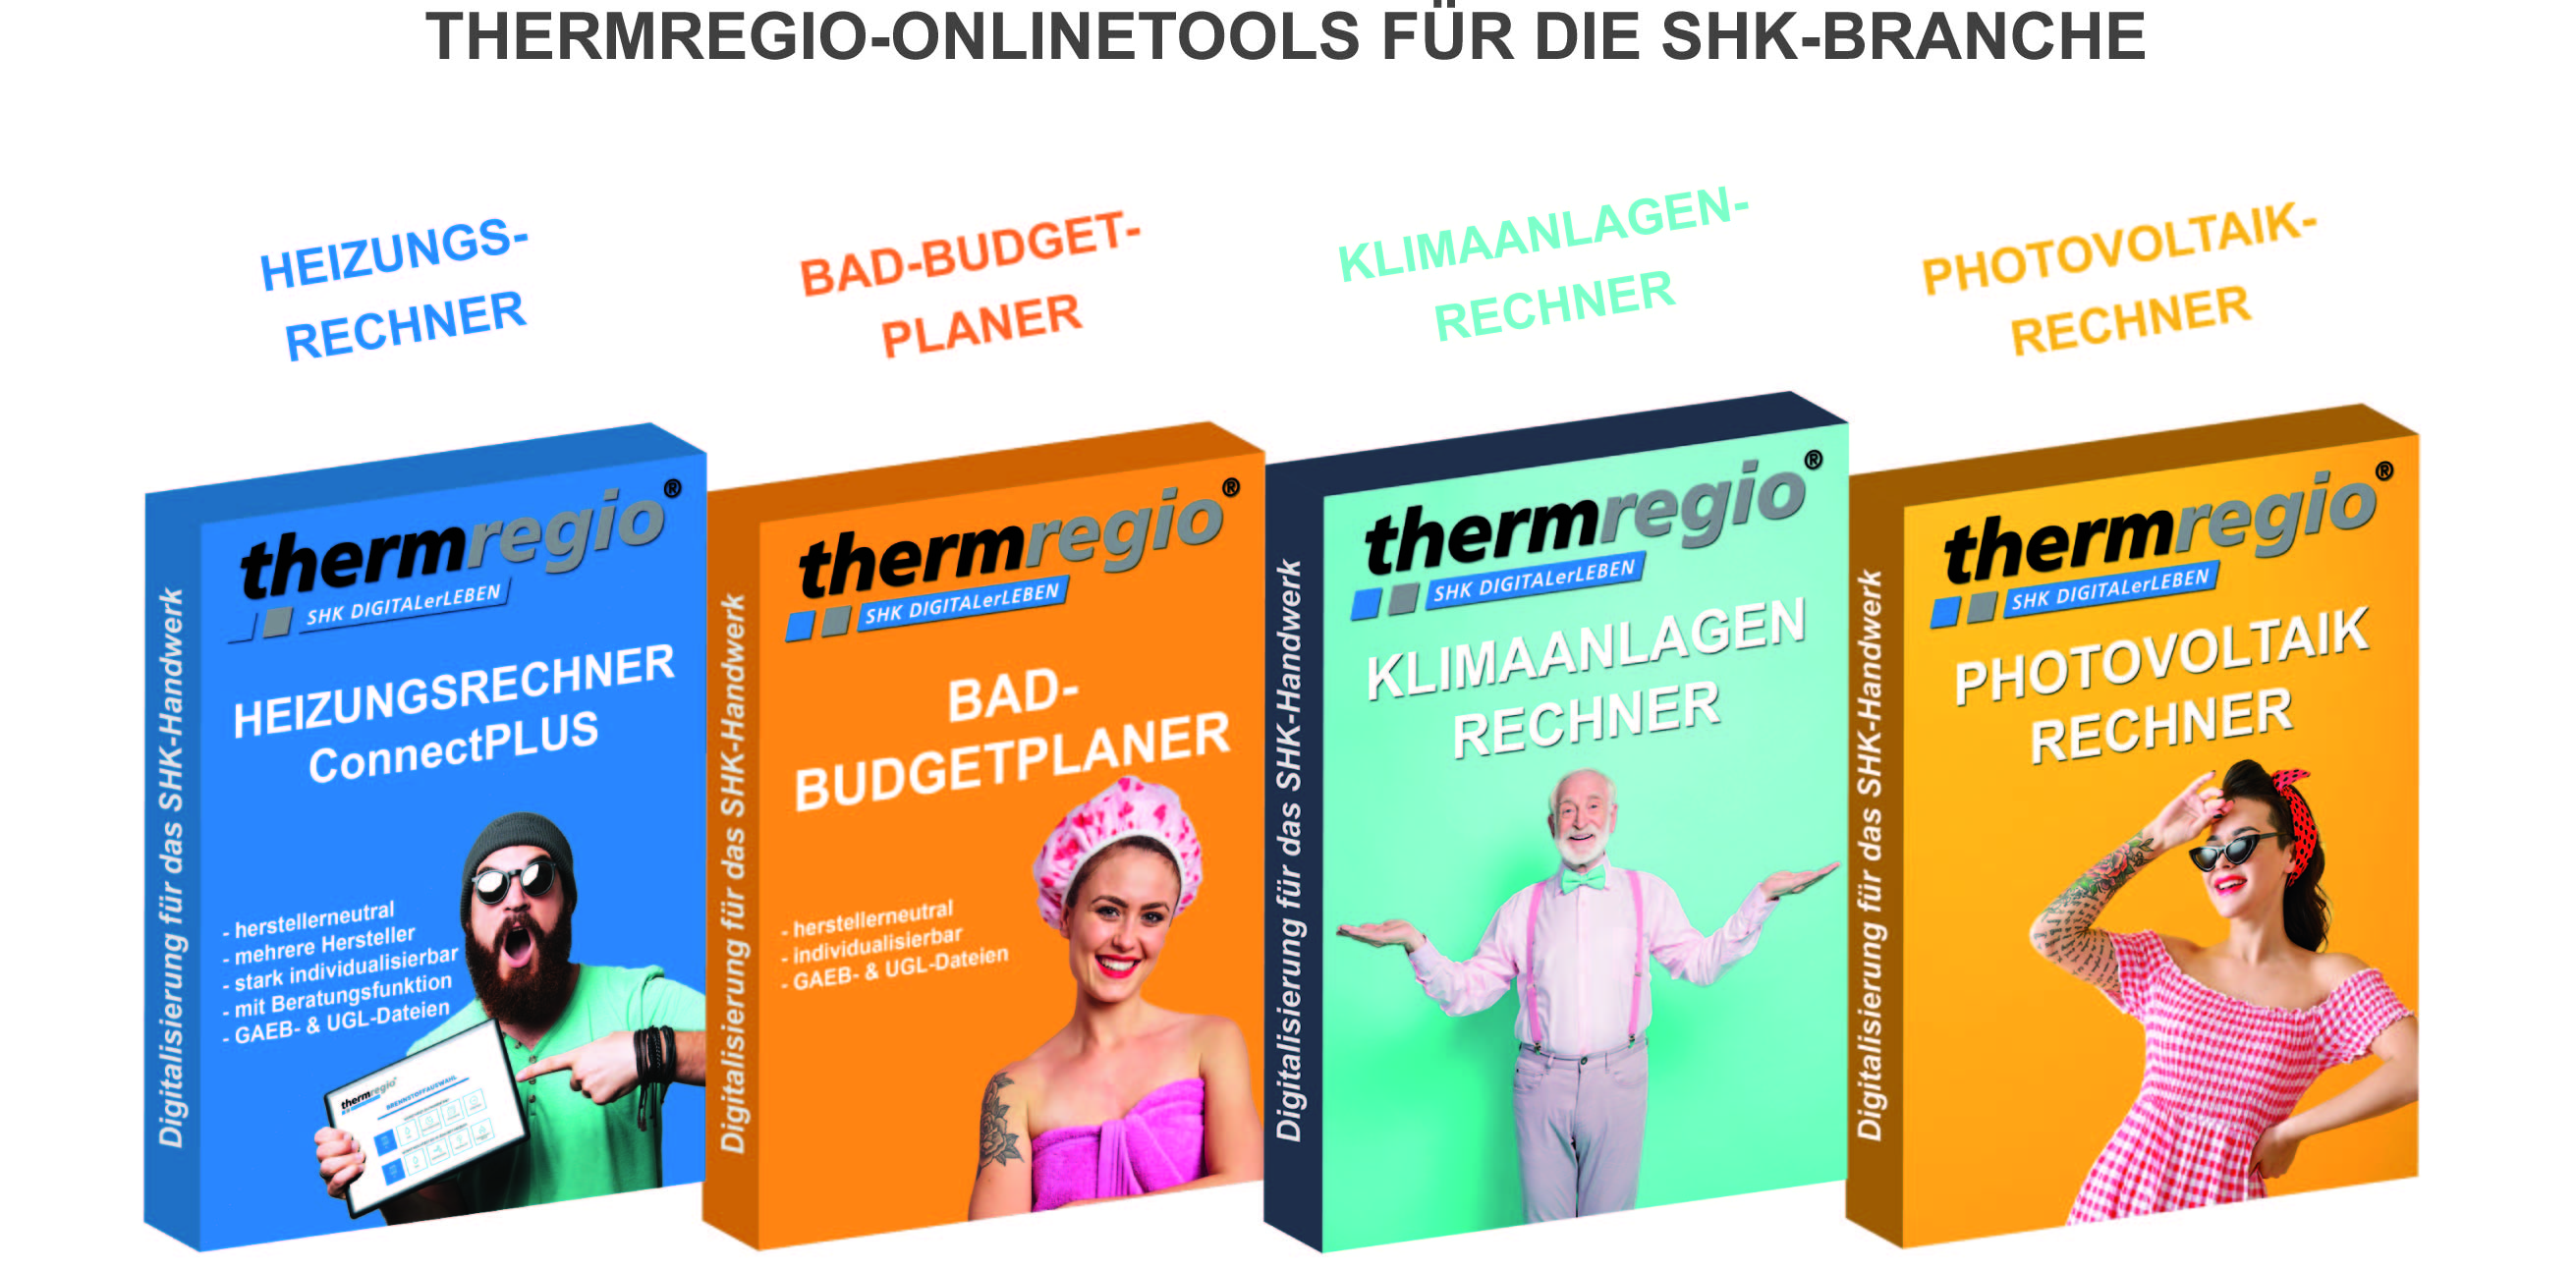  Thermregio-Onlinetools für die SHK-Branche